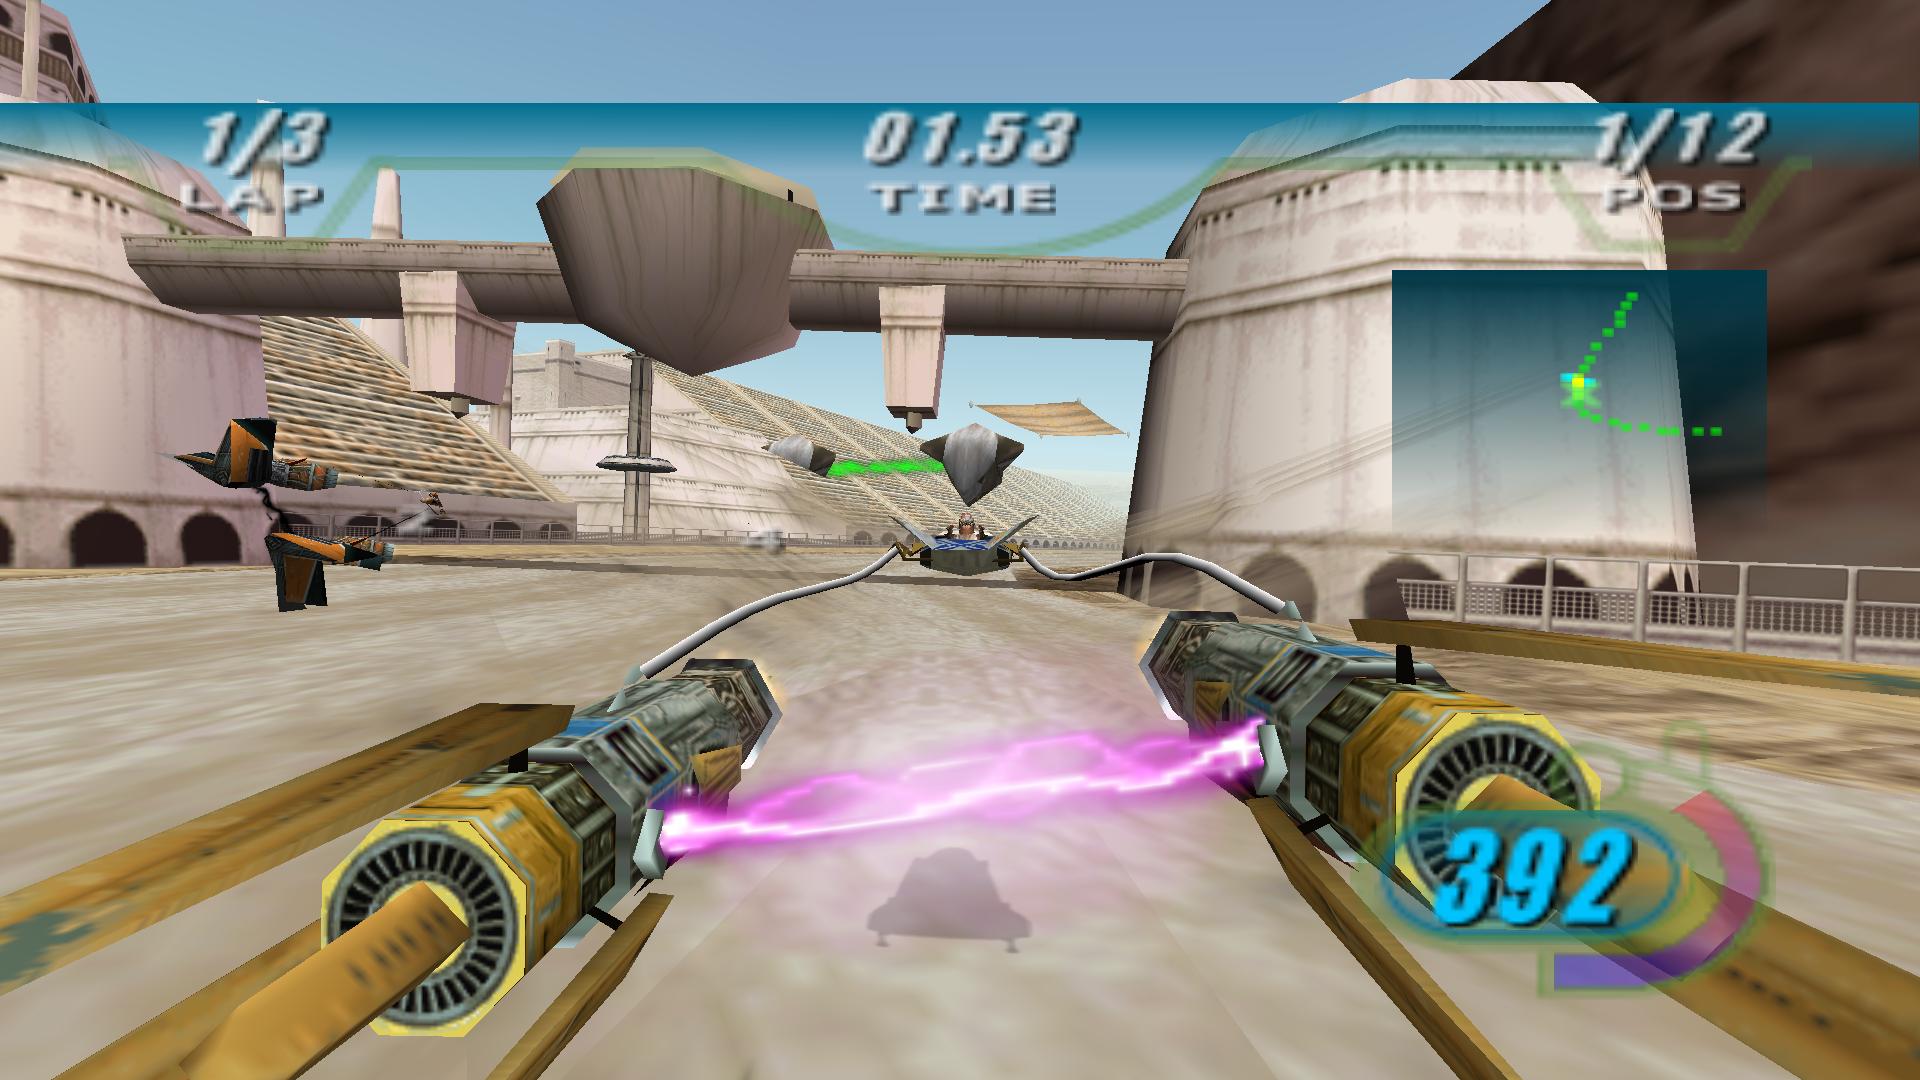 STAR WARS Episode I: Racer screenshot 2